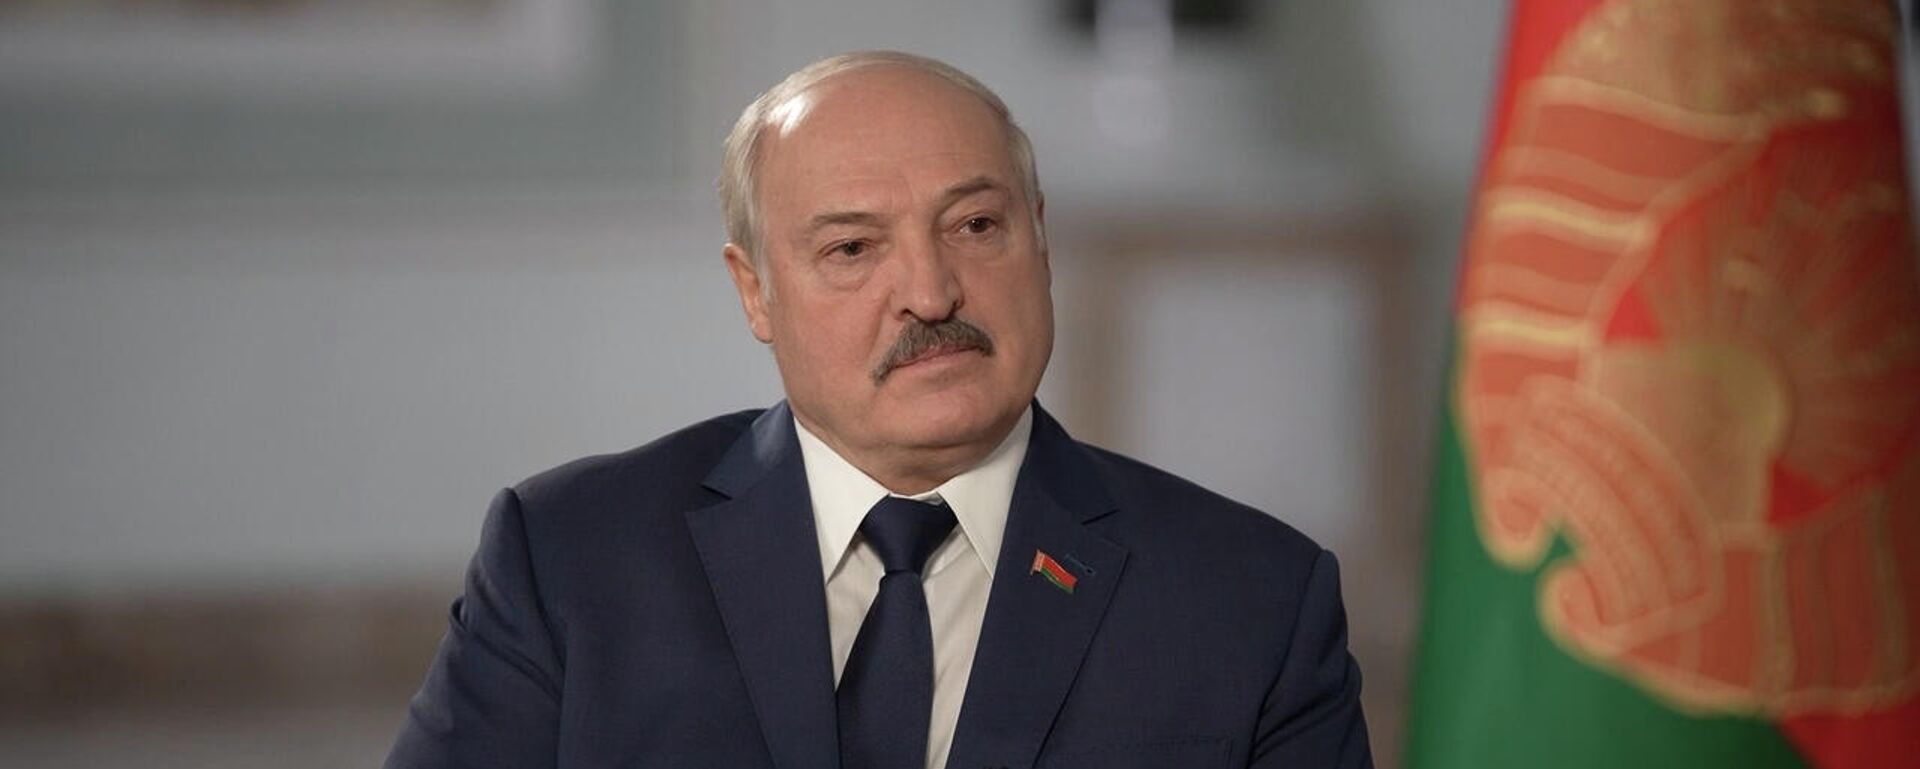 Президент Лукашенко: мы разместим у себя ядерное оружие, если НАТО отправит его в Польшу - Sputnik Литва, 1920, 30.11.2021